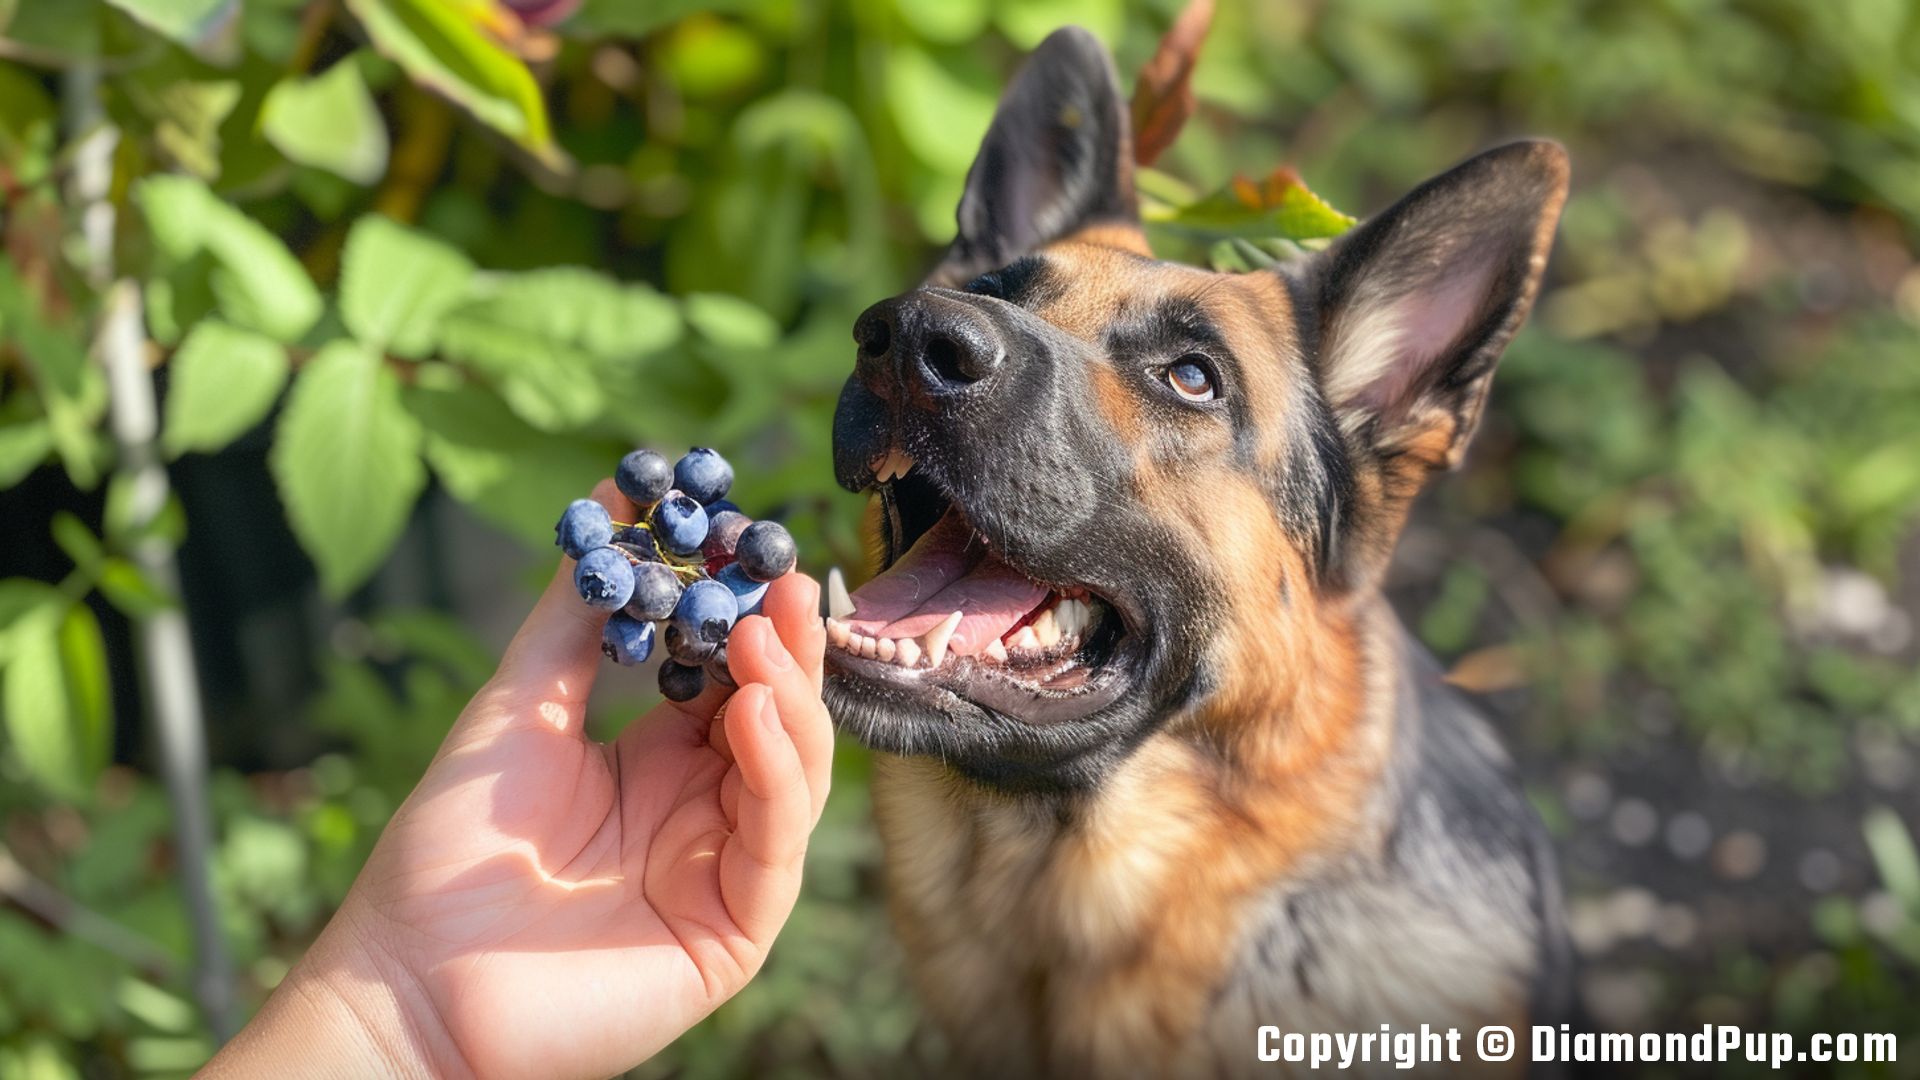 Image of an Adorable German Shepherd Eating Blueberries